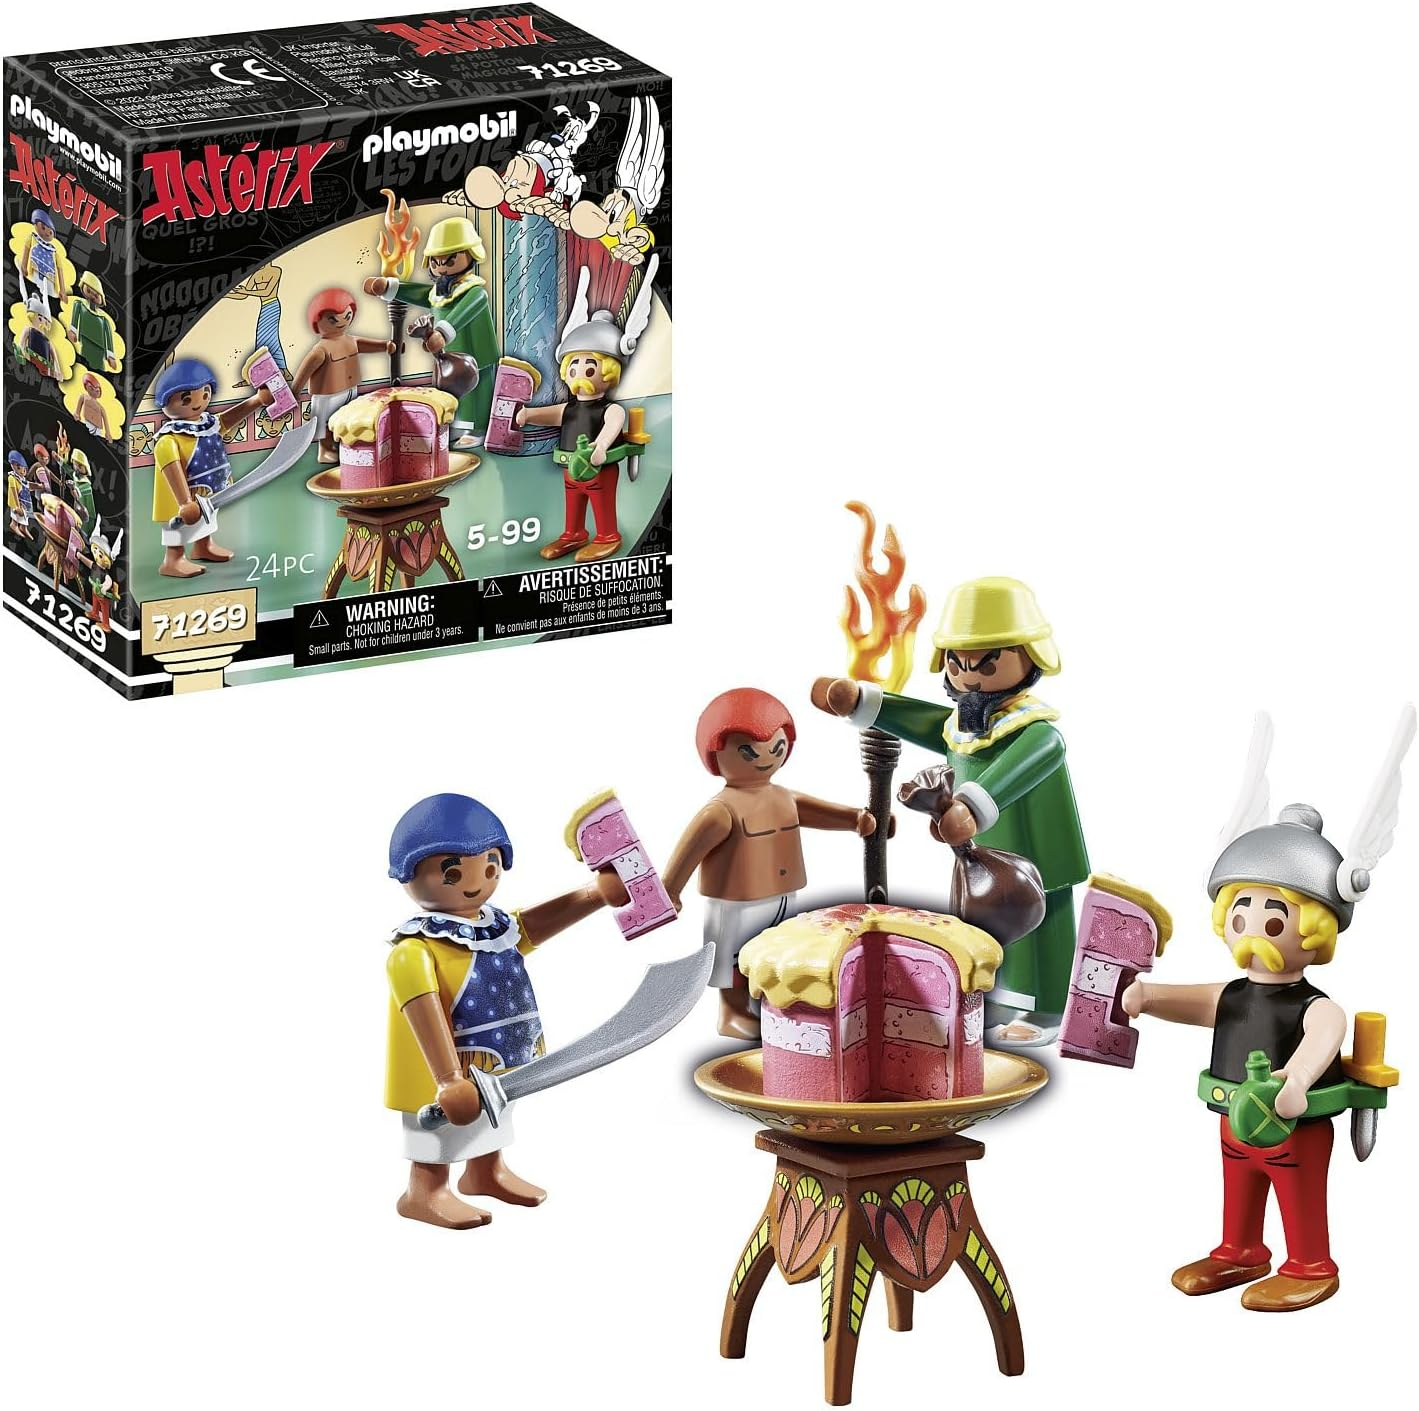 Playmobil 71269 Asterix: Bolo Envenenado de Artifis, provador de Cleópatra e Artifis, bem como seu assistente Krukhut, figuras de coleção, dramatização divertida e imaginativa, conjuntos de jogos adequados para crianças de 5 anos ou mais